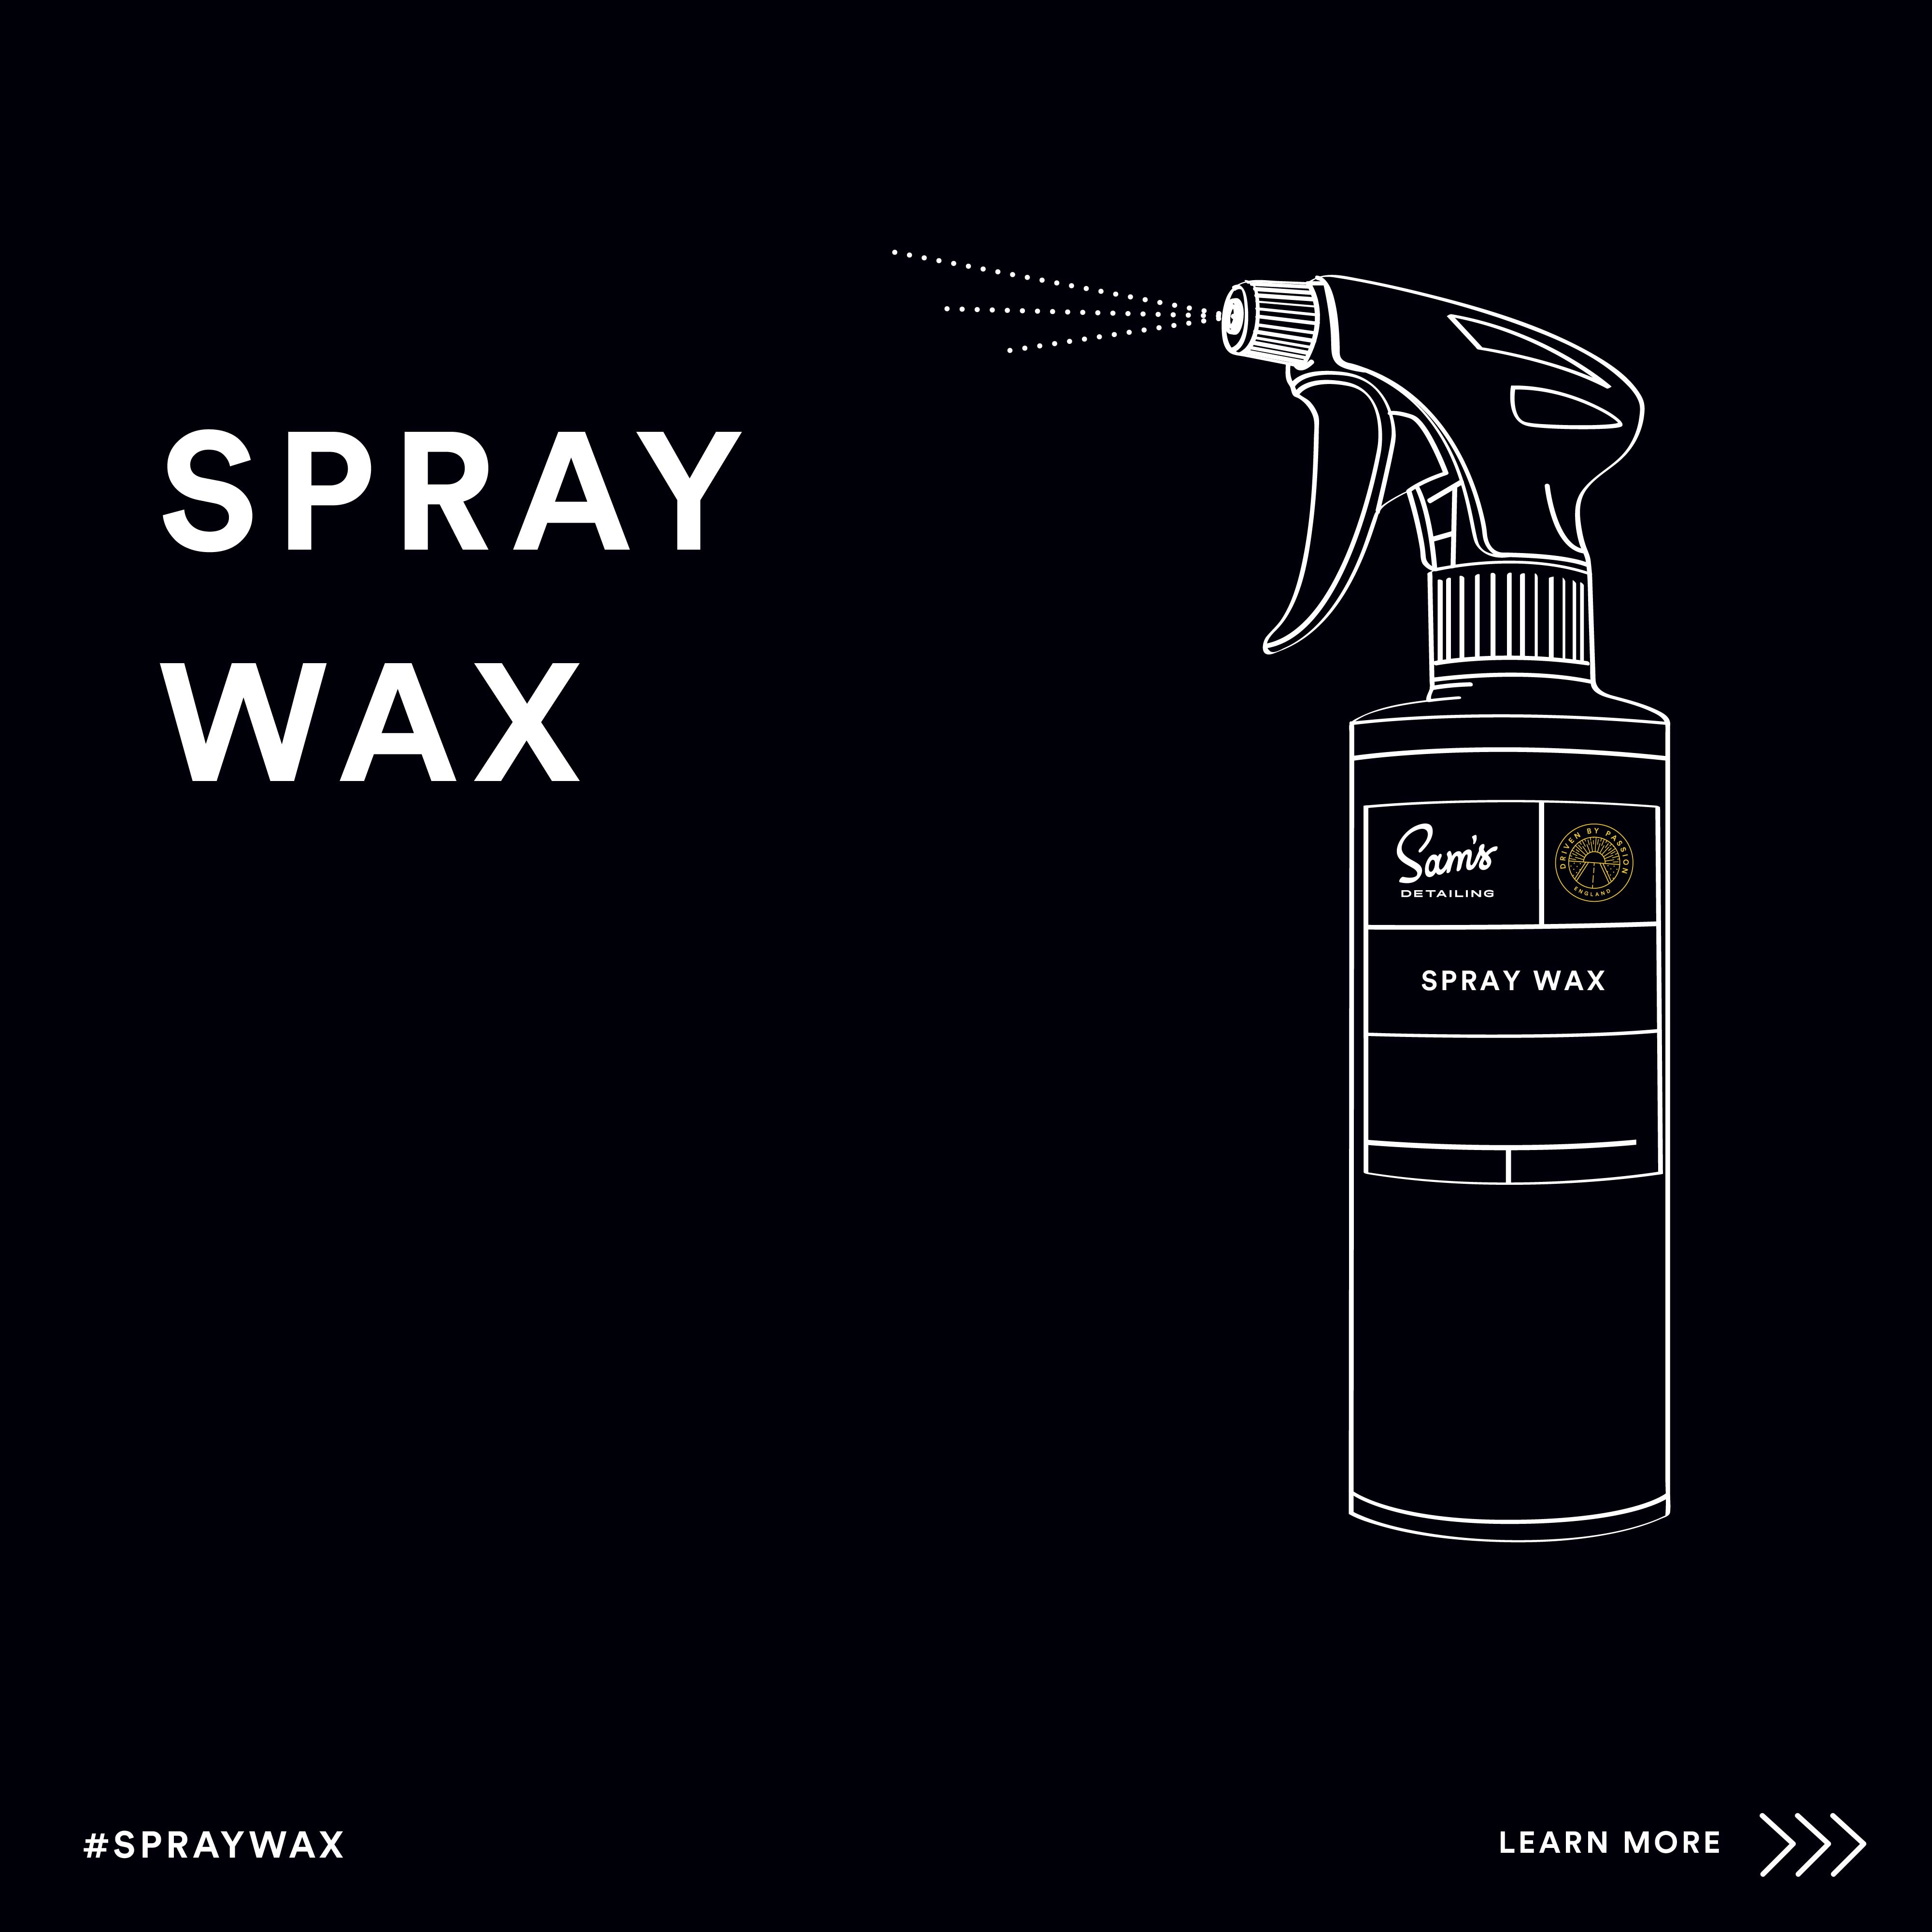 Spray%20wax-01.jpg